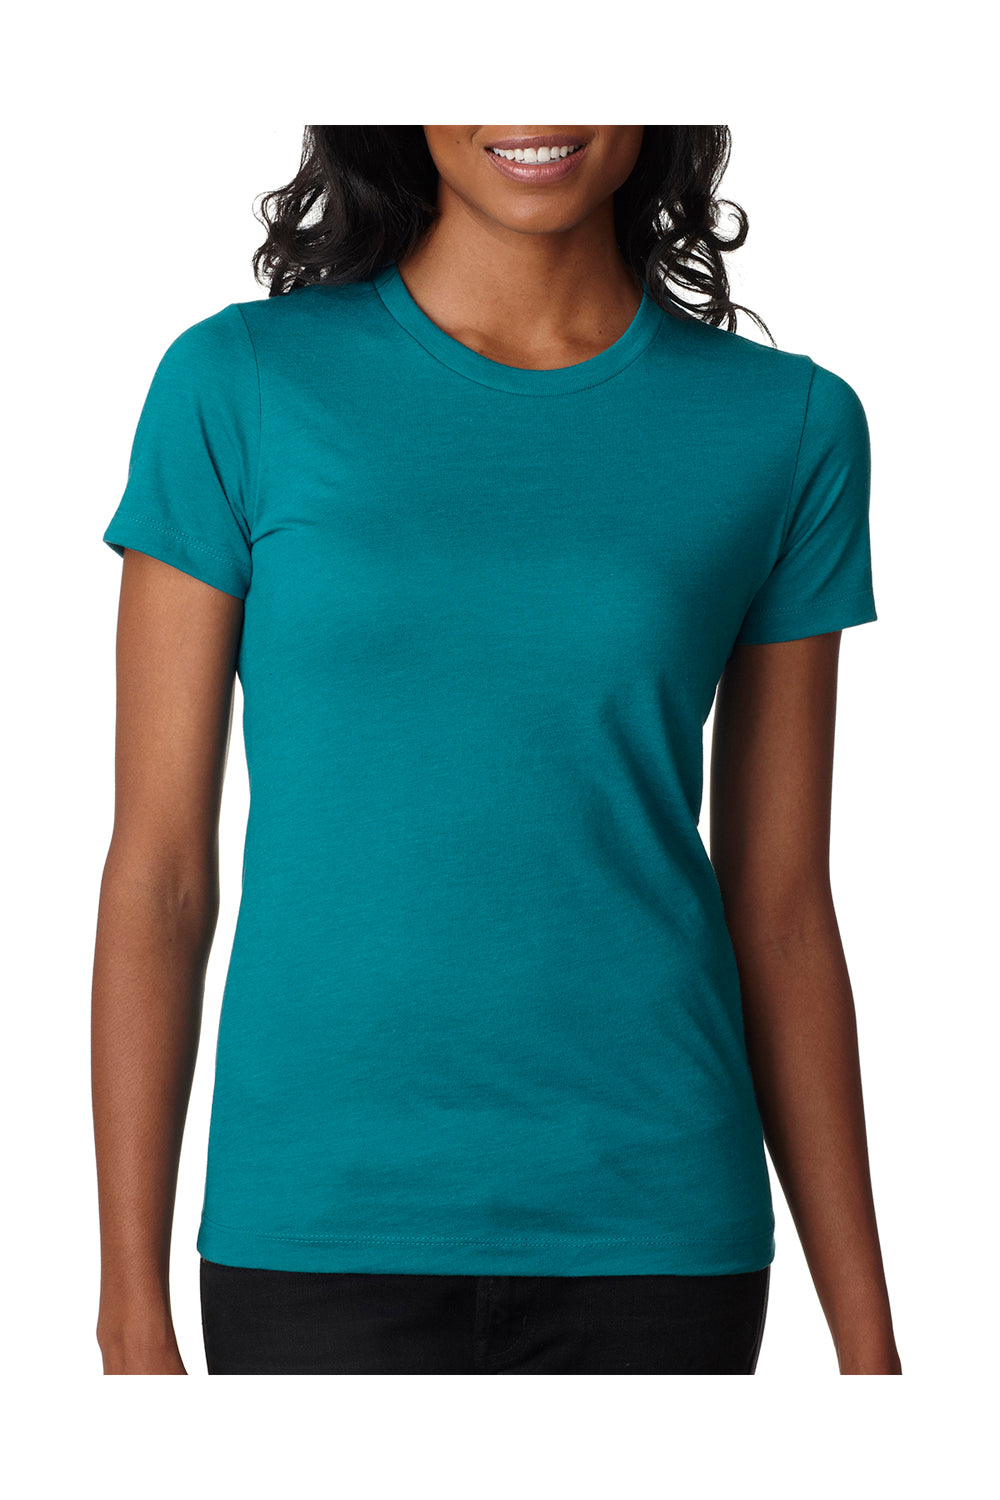 Next Level 6610 Womens CVC Jersey Short Sleeve Crewneck T-Shirt Teal Green Front